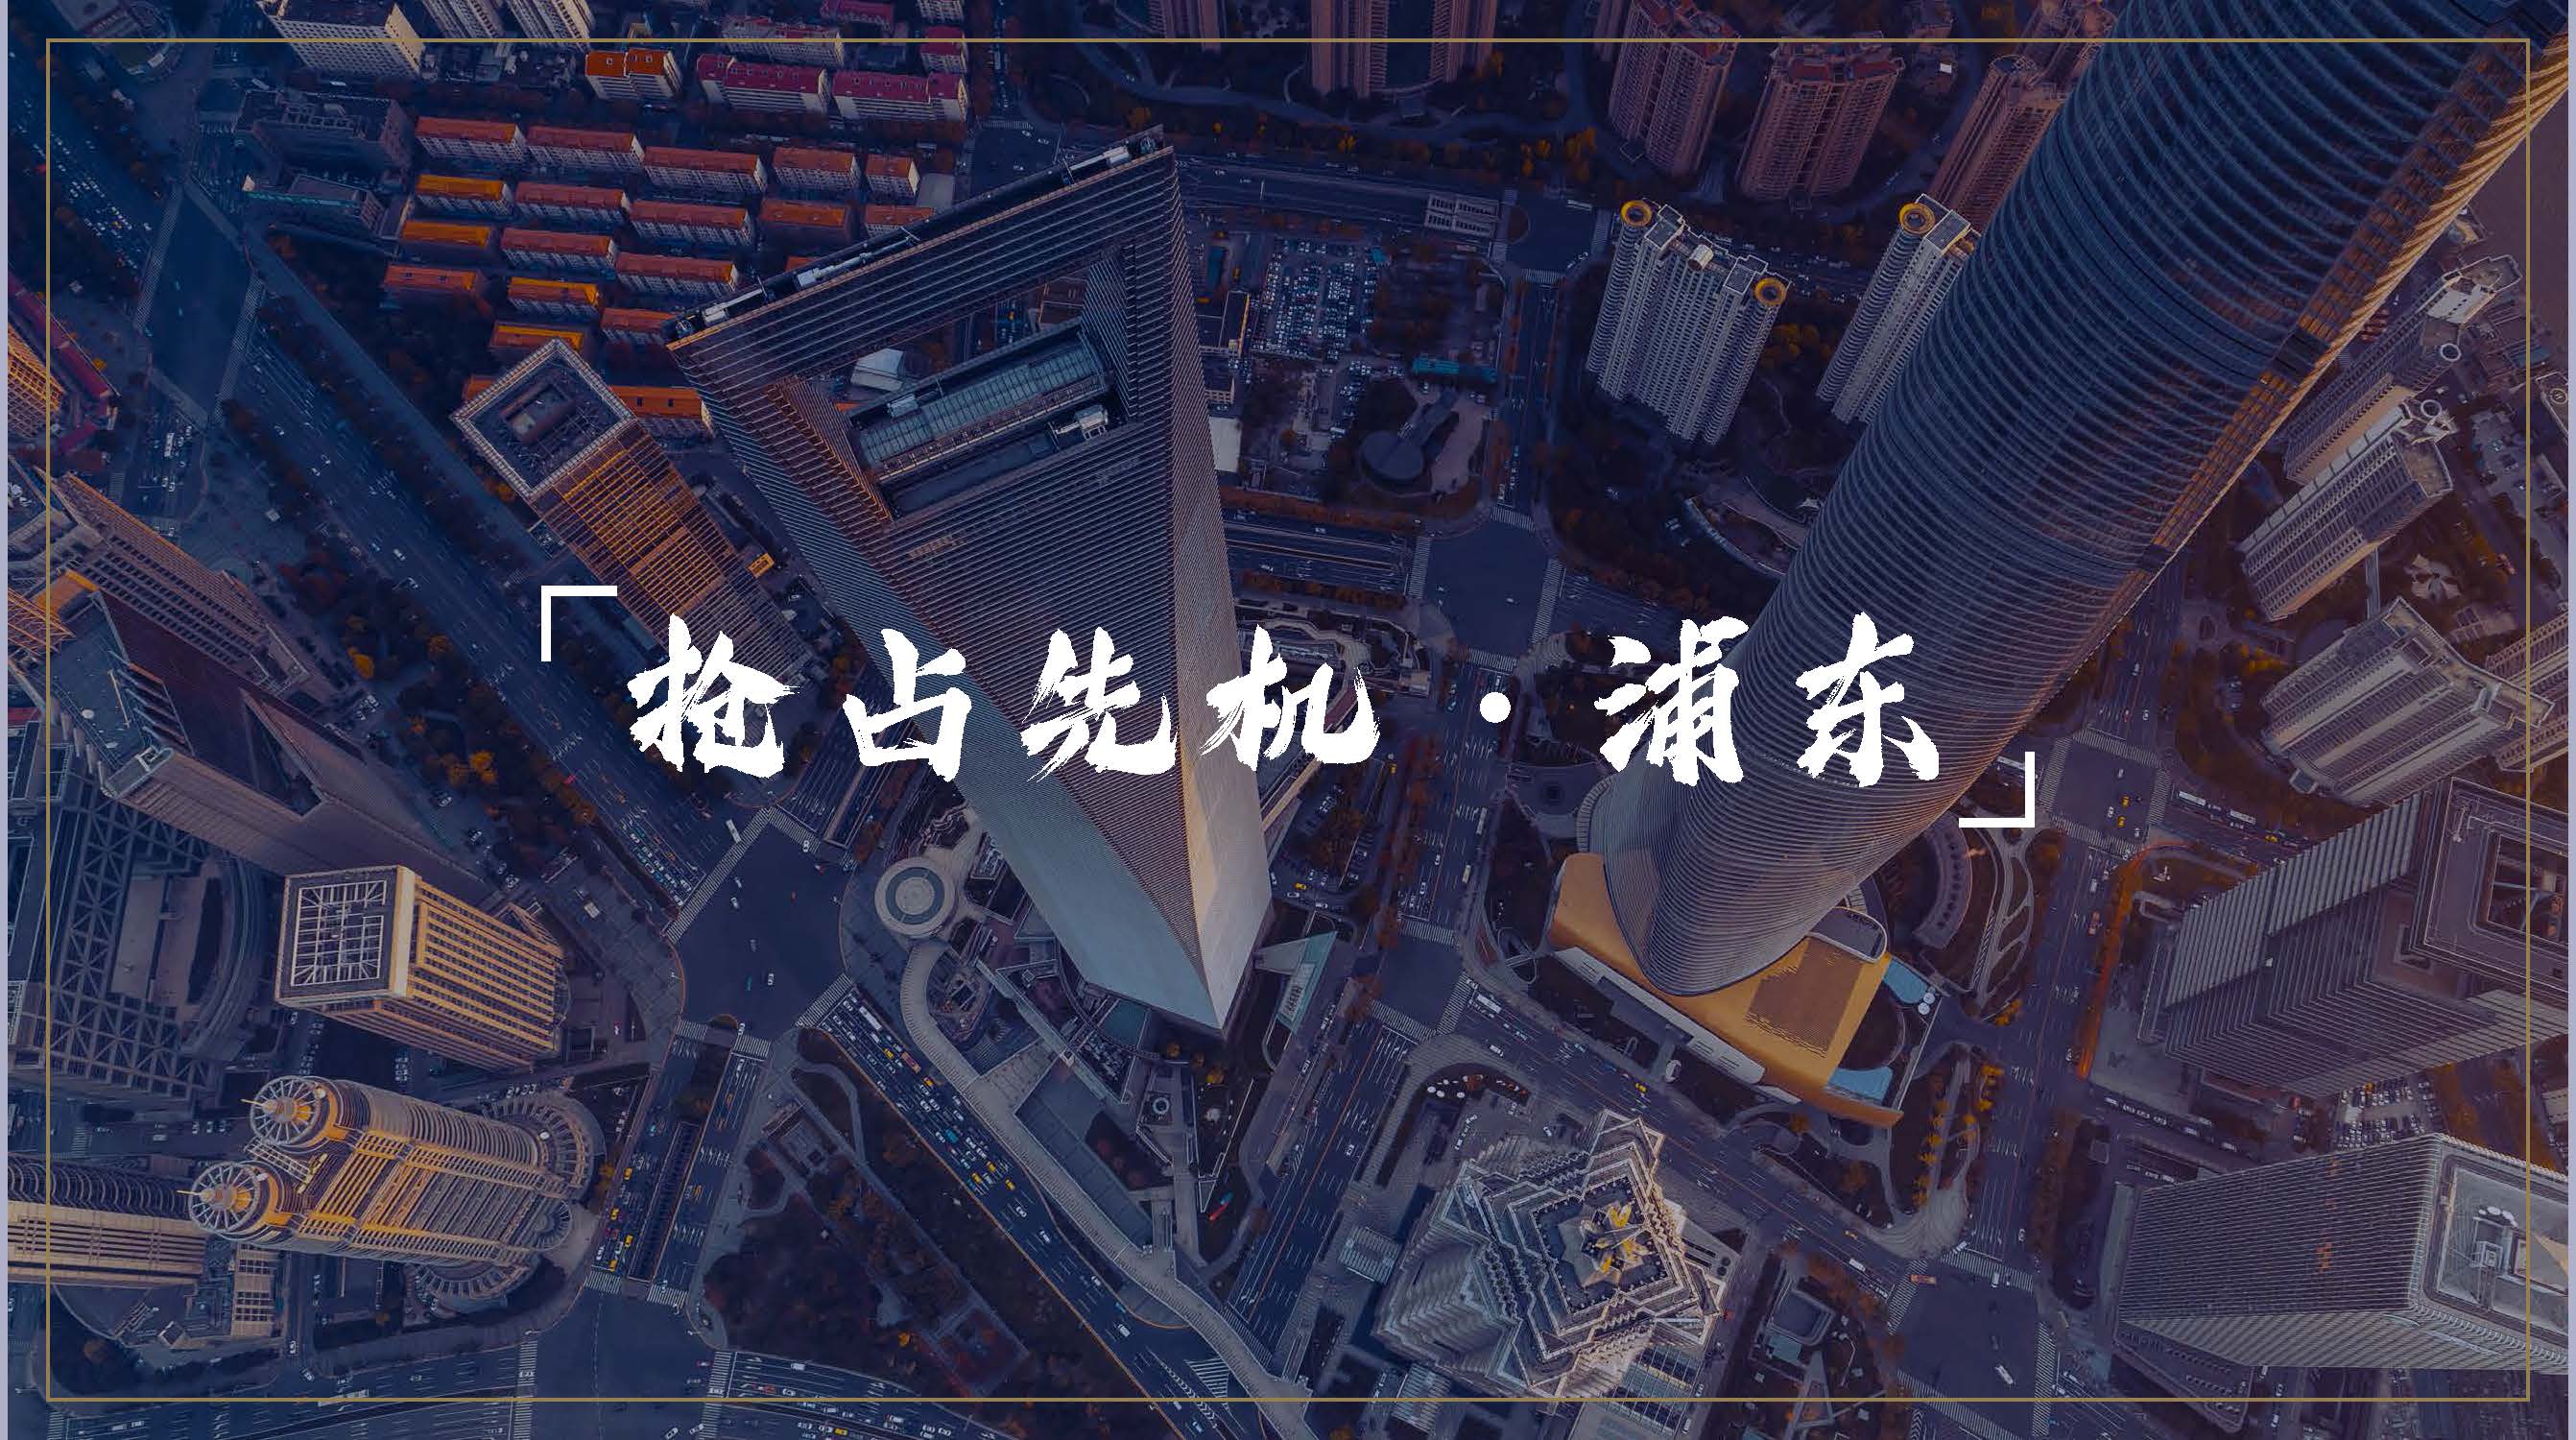 上海新环广场投资价值、区位分析、交通介绍